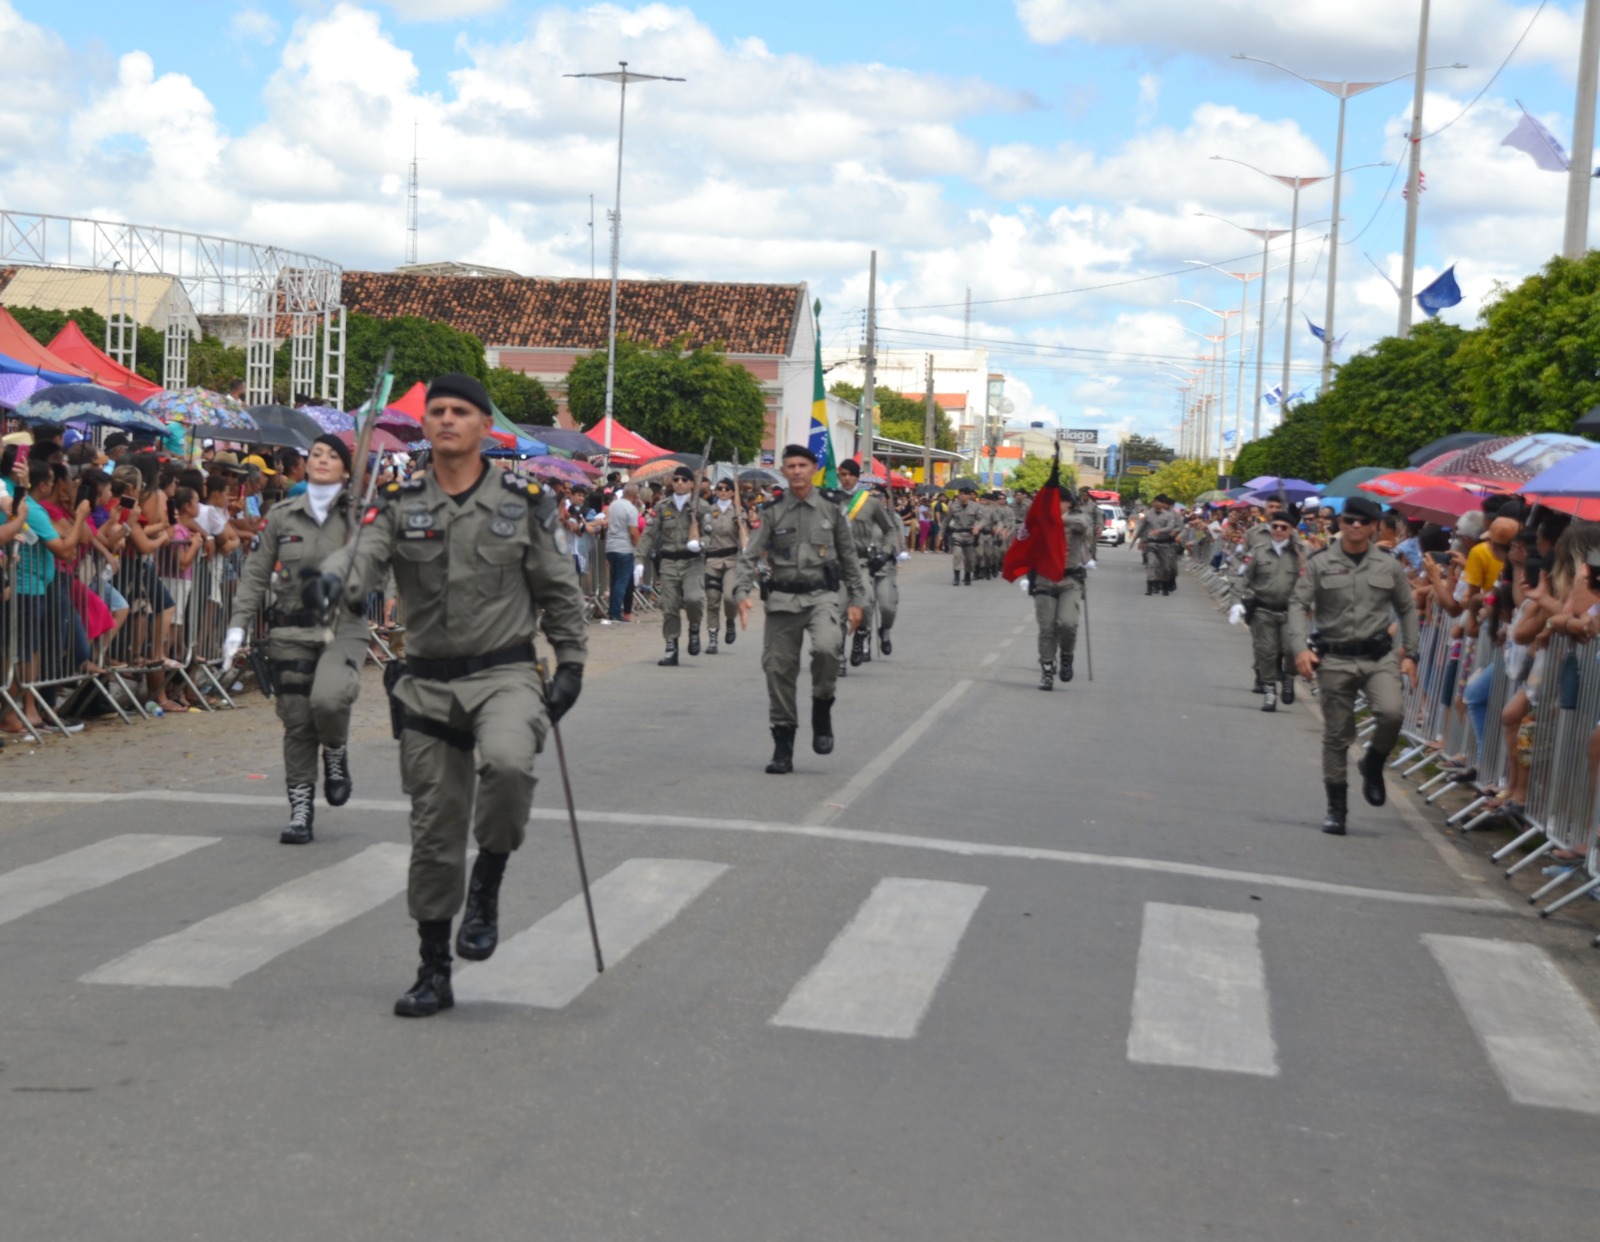 Desfiles-Civicos-em-Monteiro-acontecem-com-grande-presenca-de-publico-e-autoridades-46 Desfiles Cívicos em Monteiro acontecem com grande presença de público e autoridades